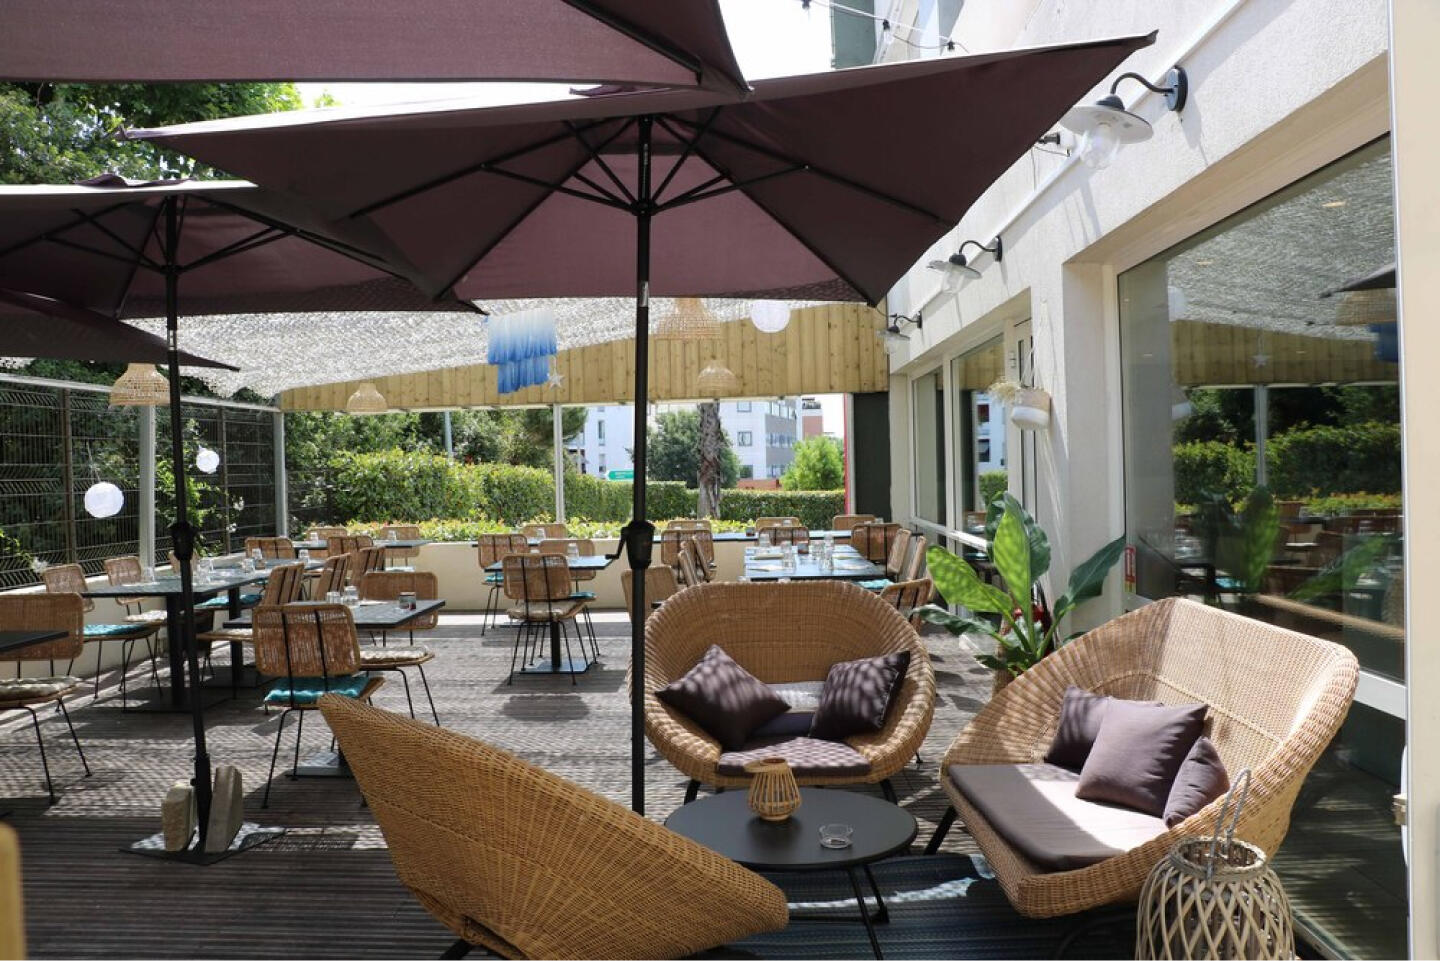 Terraza exterior del Restaurante Bistrot City Montpellier Ovalie con cómodos sillones de mimbre bajo un gran paraguas marrón, mesas preparadas para comer y plantas verdes, ofreciendo un ambiente relajado para comer al aire libre.